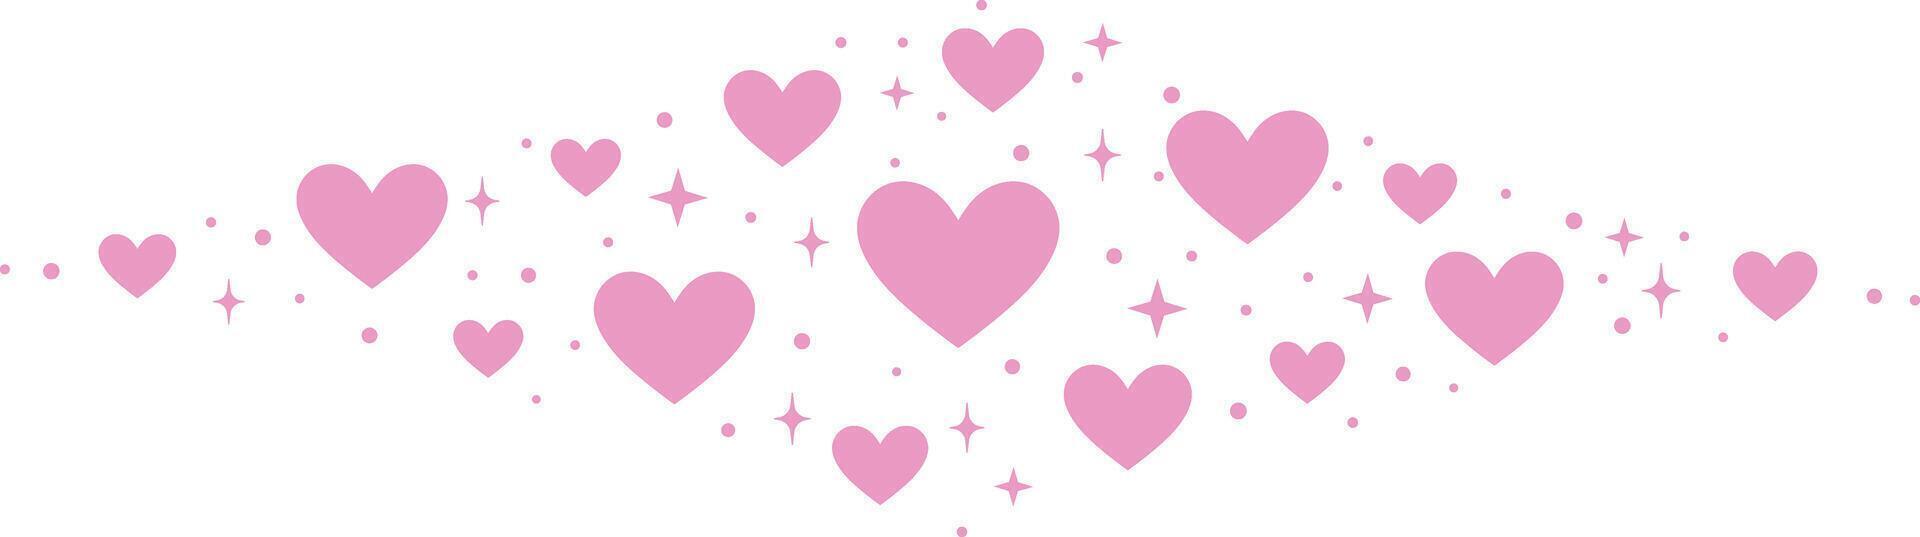 rosado corazón vector bandera ilustración, mano dibujado linda decorativo acortar Arte elemento con estrellas y corazones, aislado